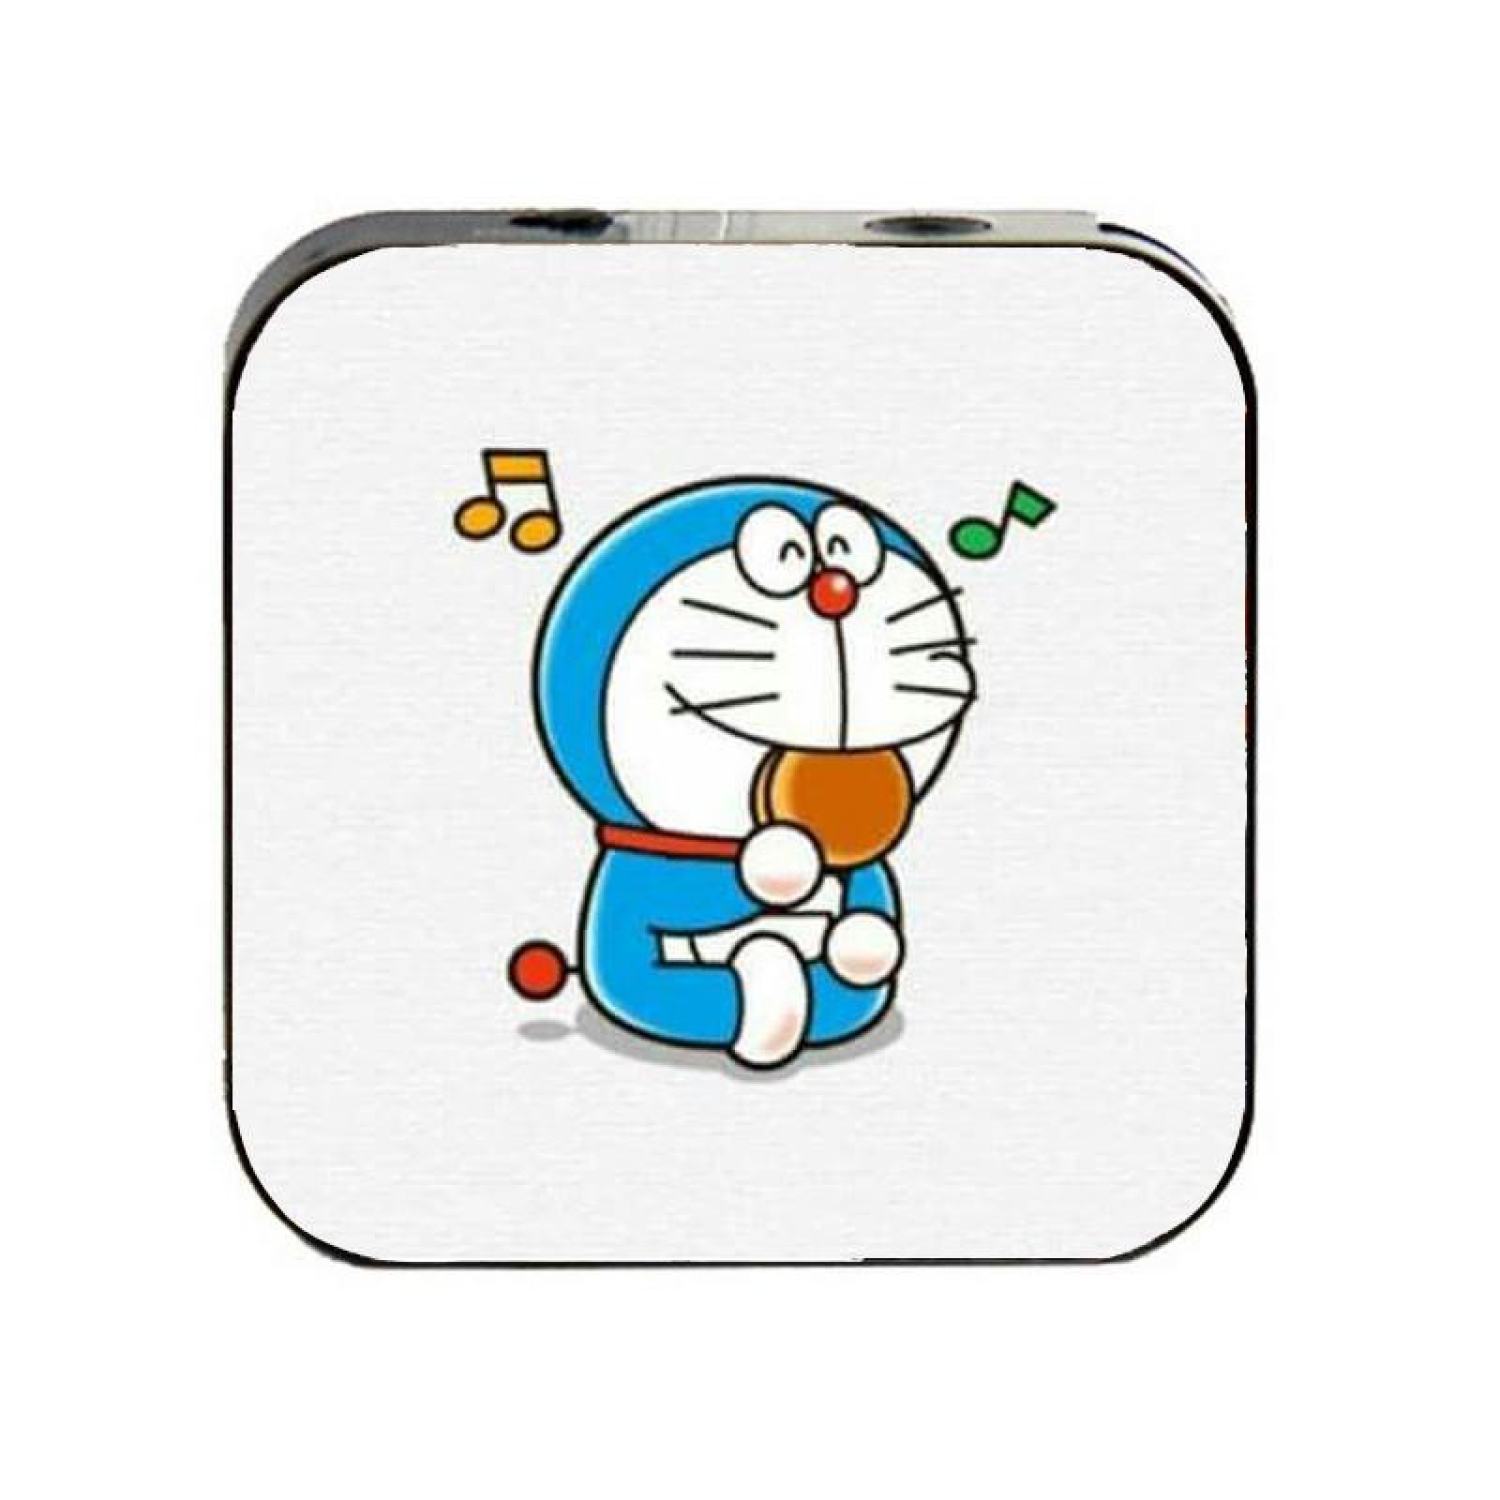 Đam mê âm nhạc và Doraemon? Hãy khám phá máy nghe nhạc Doraemon mini thật đáng yêu. Không chỉ sở hữu thiết kế nhỏ gọn tiện lợi, sản phẩm còn có hình ảnh xinh xắn của chú mèo máy nổi tiếng.